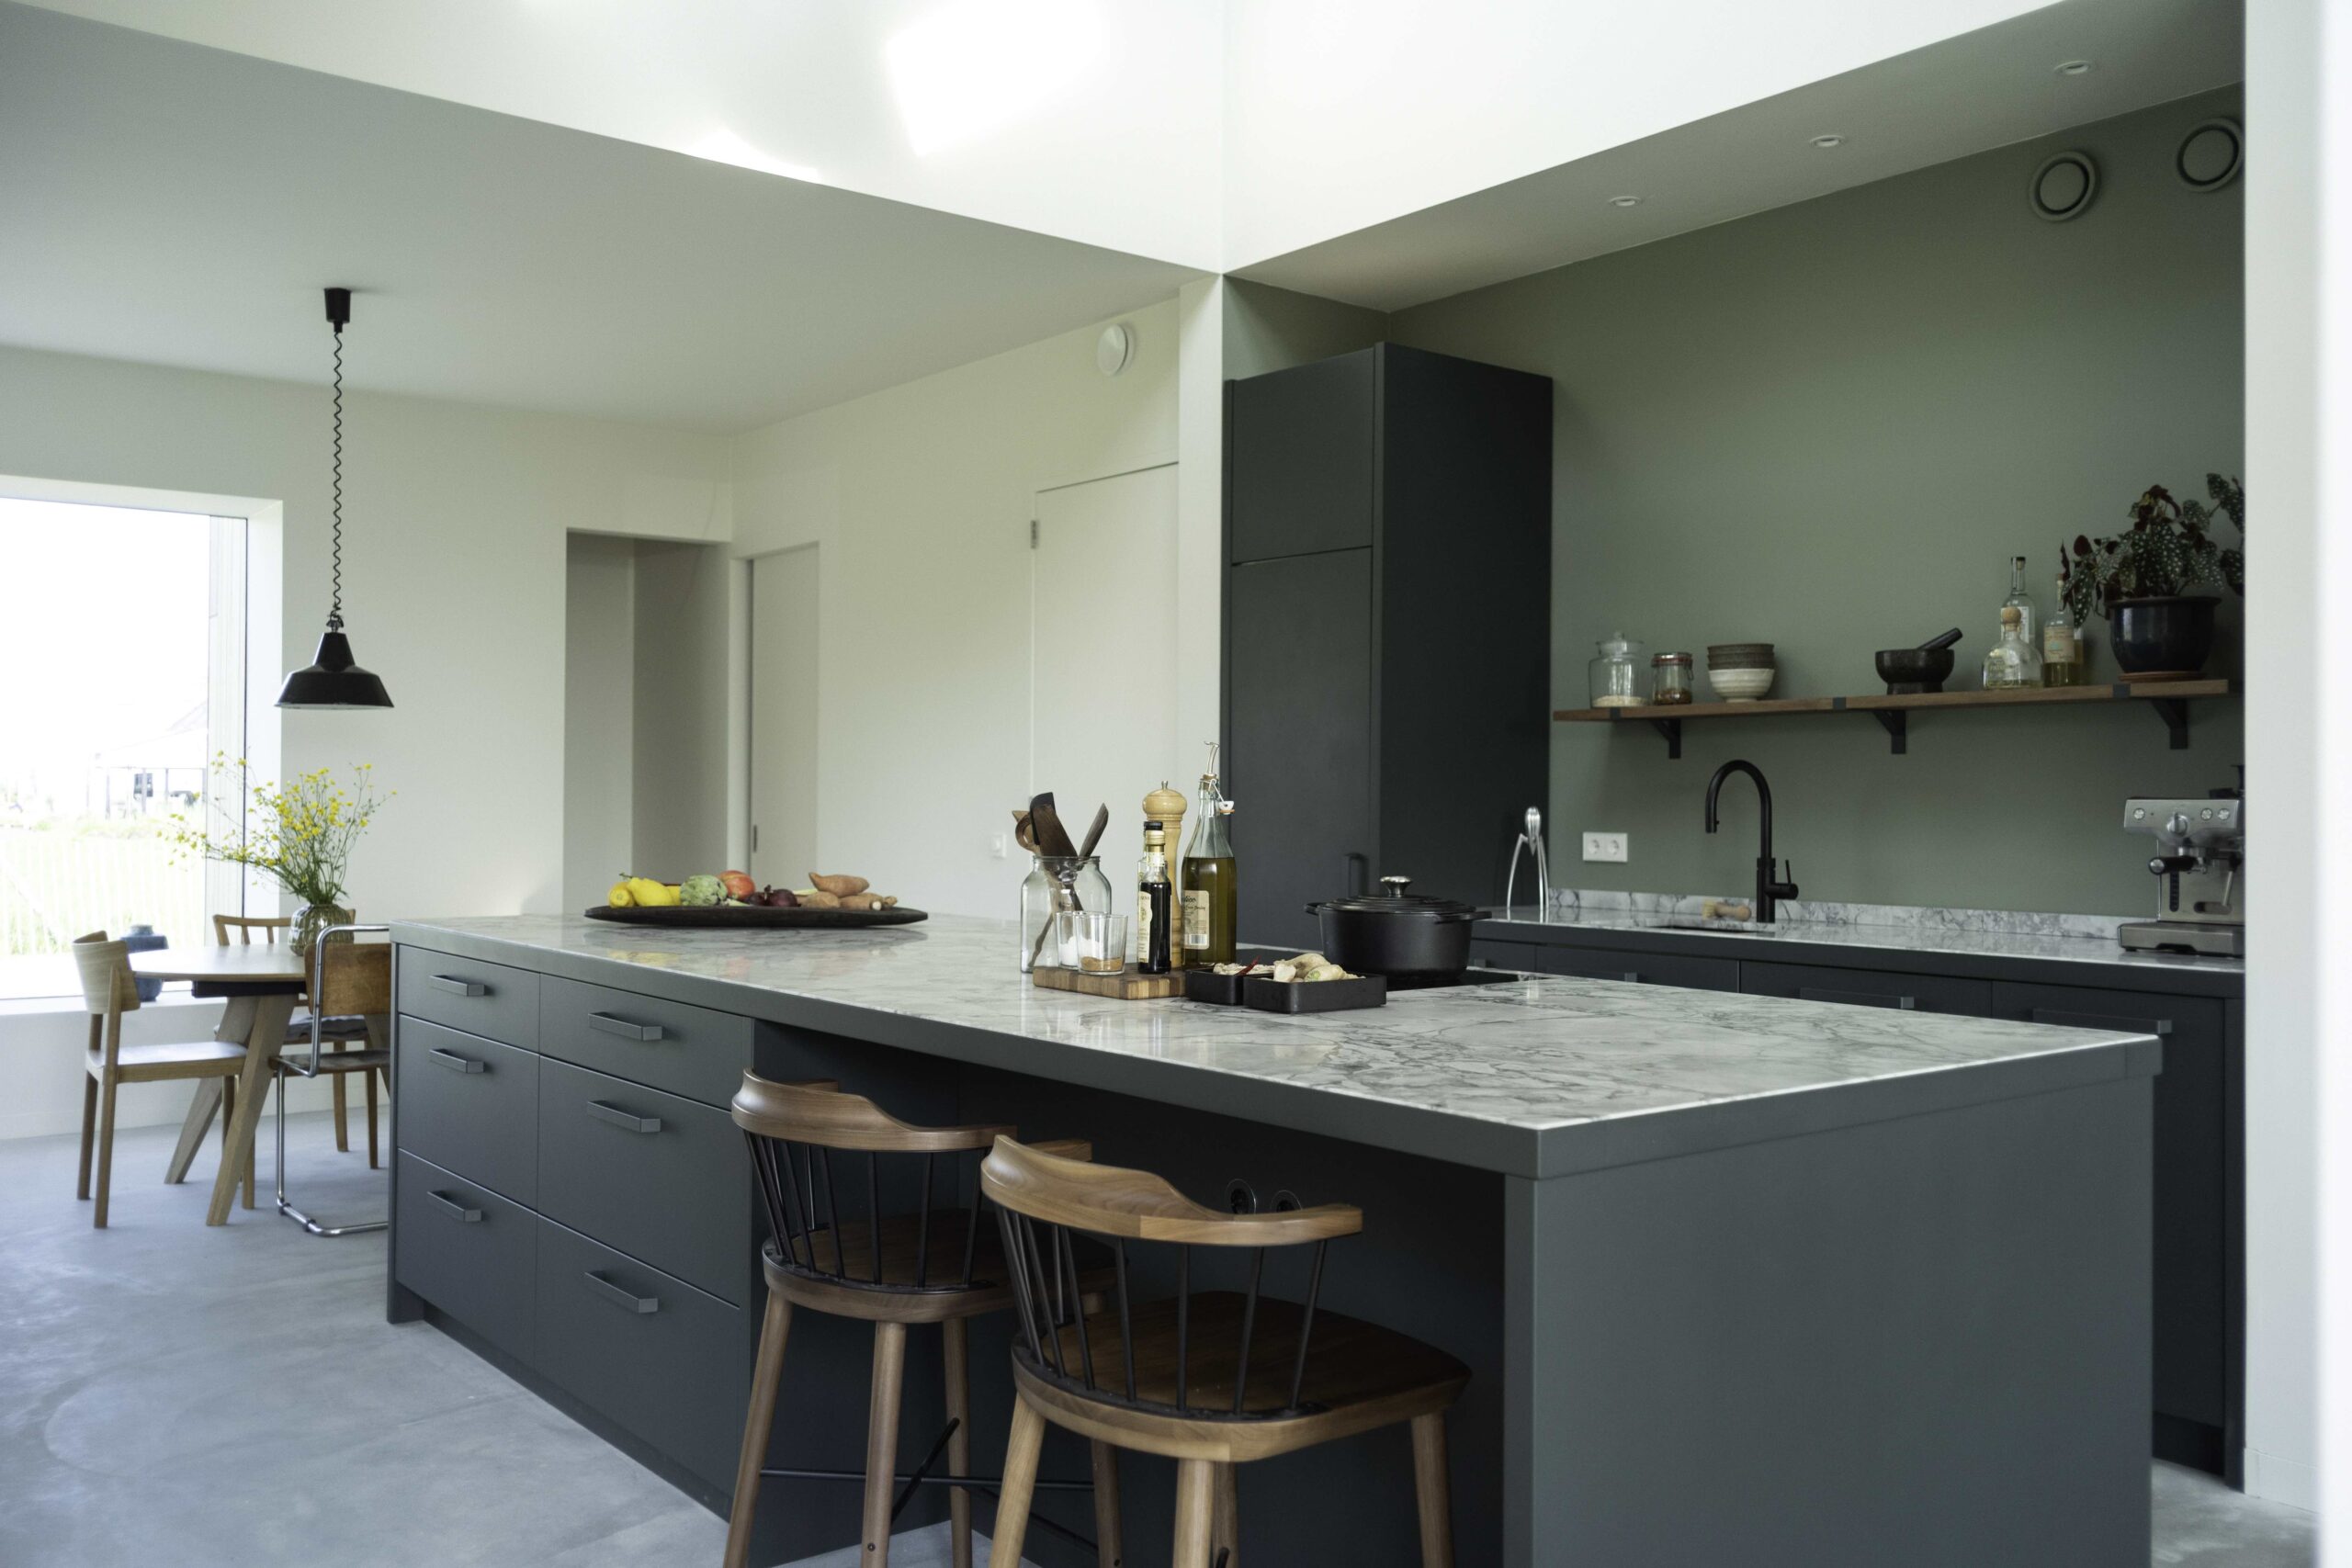 mist Ontkennen Verzoekschrift Amsterdamse keuken- en interieur merk Eginstill introduceert slim circulair  en modulair keukenconcept Still - Duurzaam Ondernemen